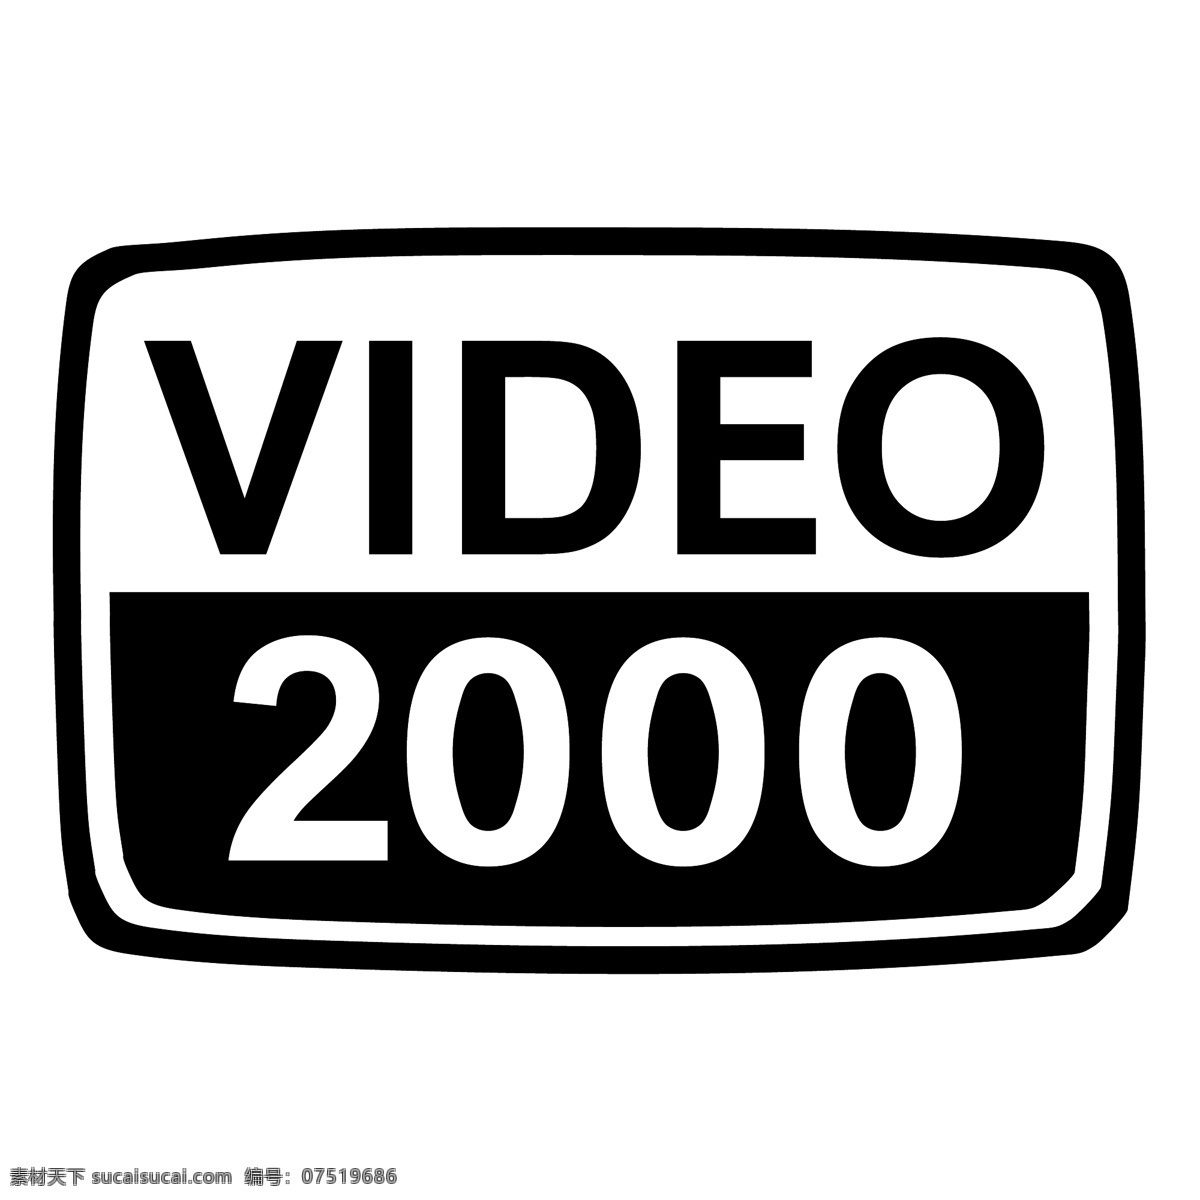 视频2000 矢量标志下载 免费矢量标识 商标 品牌标识 标识 矢量 免费 品牌 公司 白色